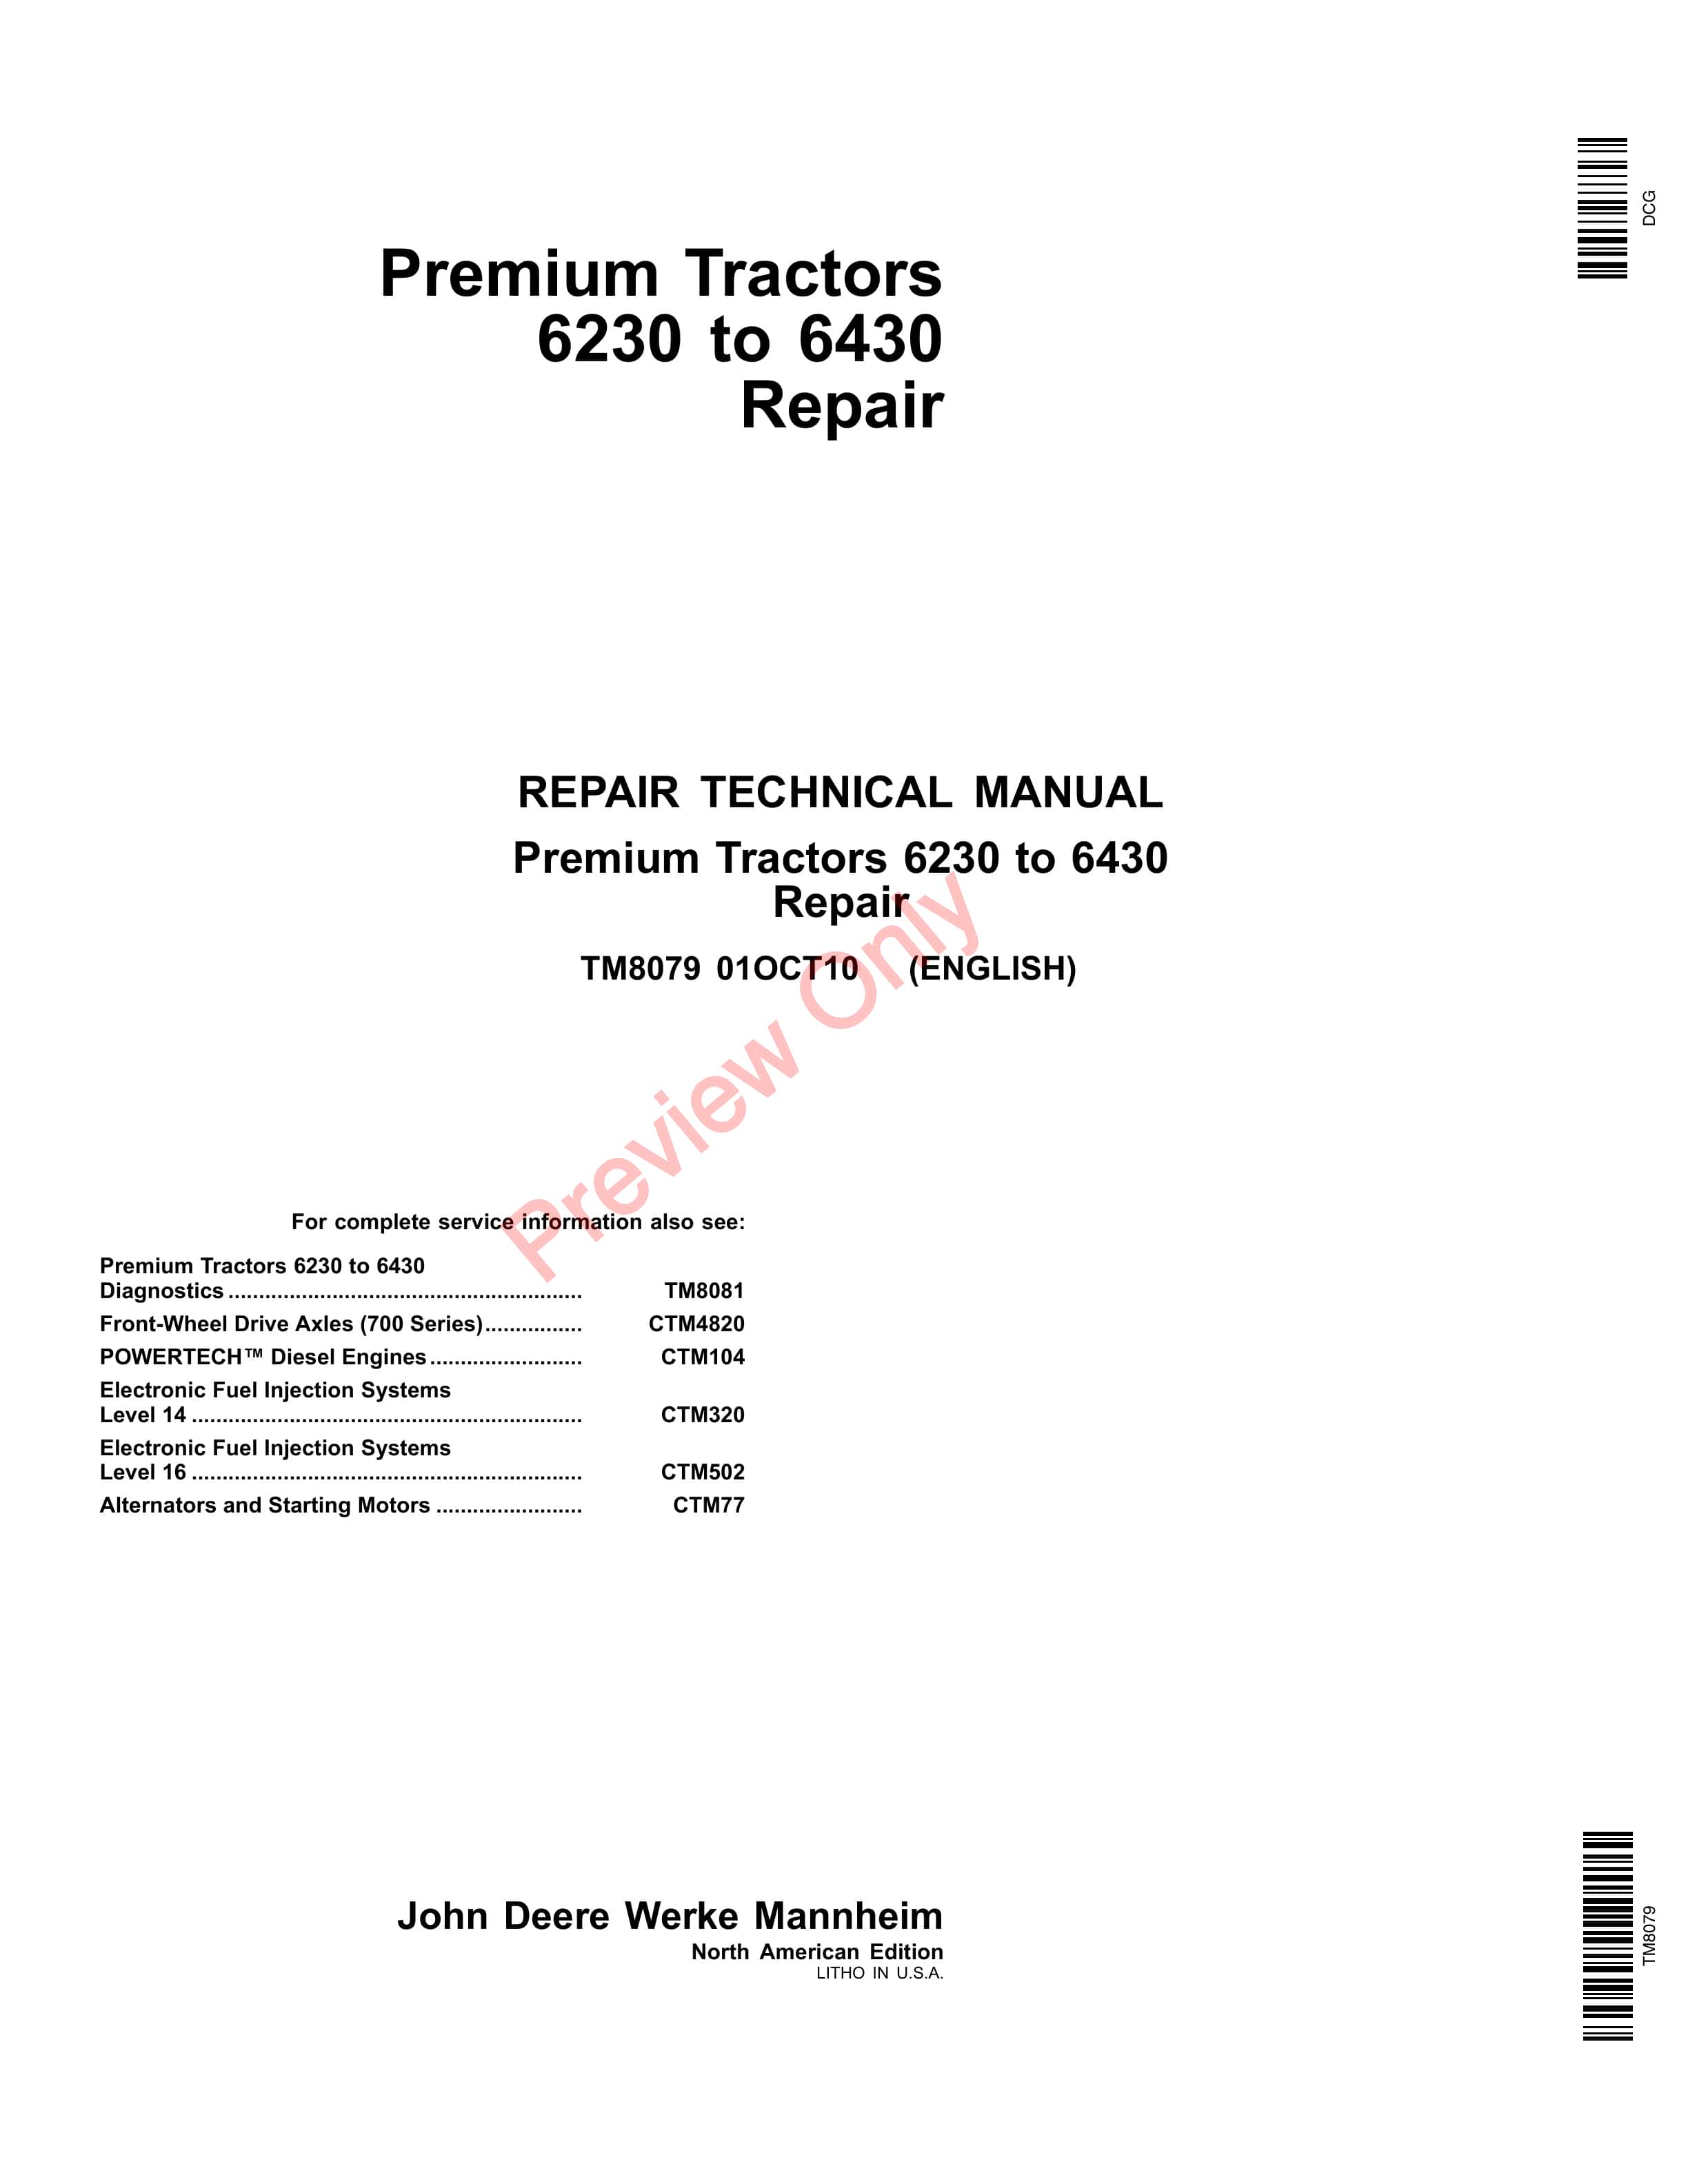 John Deere 6230, 6330, 6430 Premium Tractor Repair Technical Manual TM8079 01FEB13 PDF